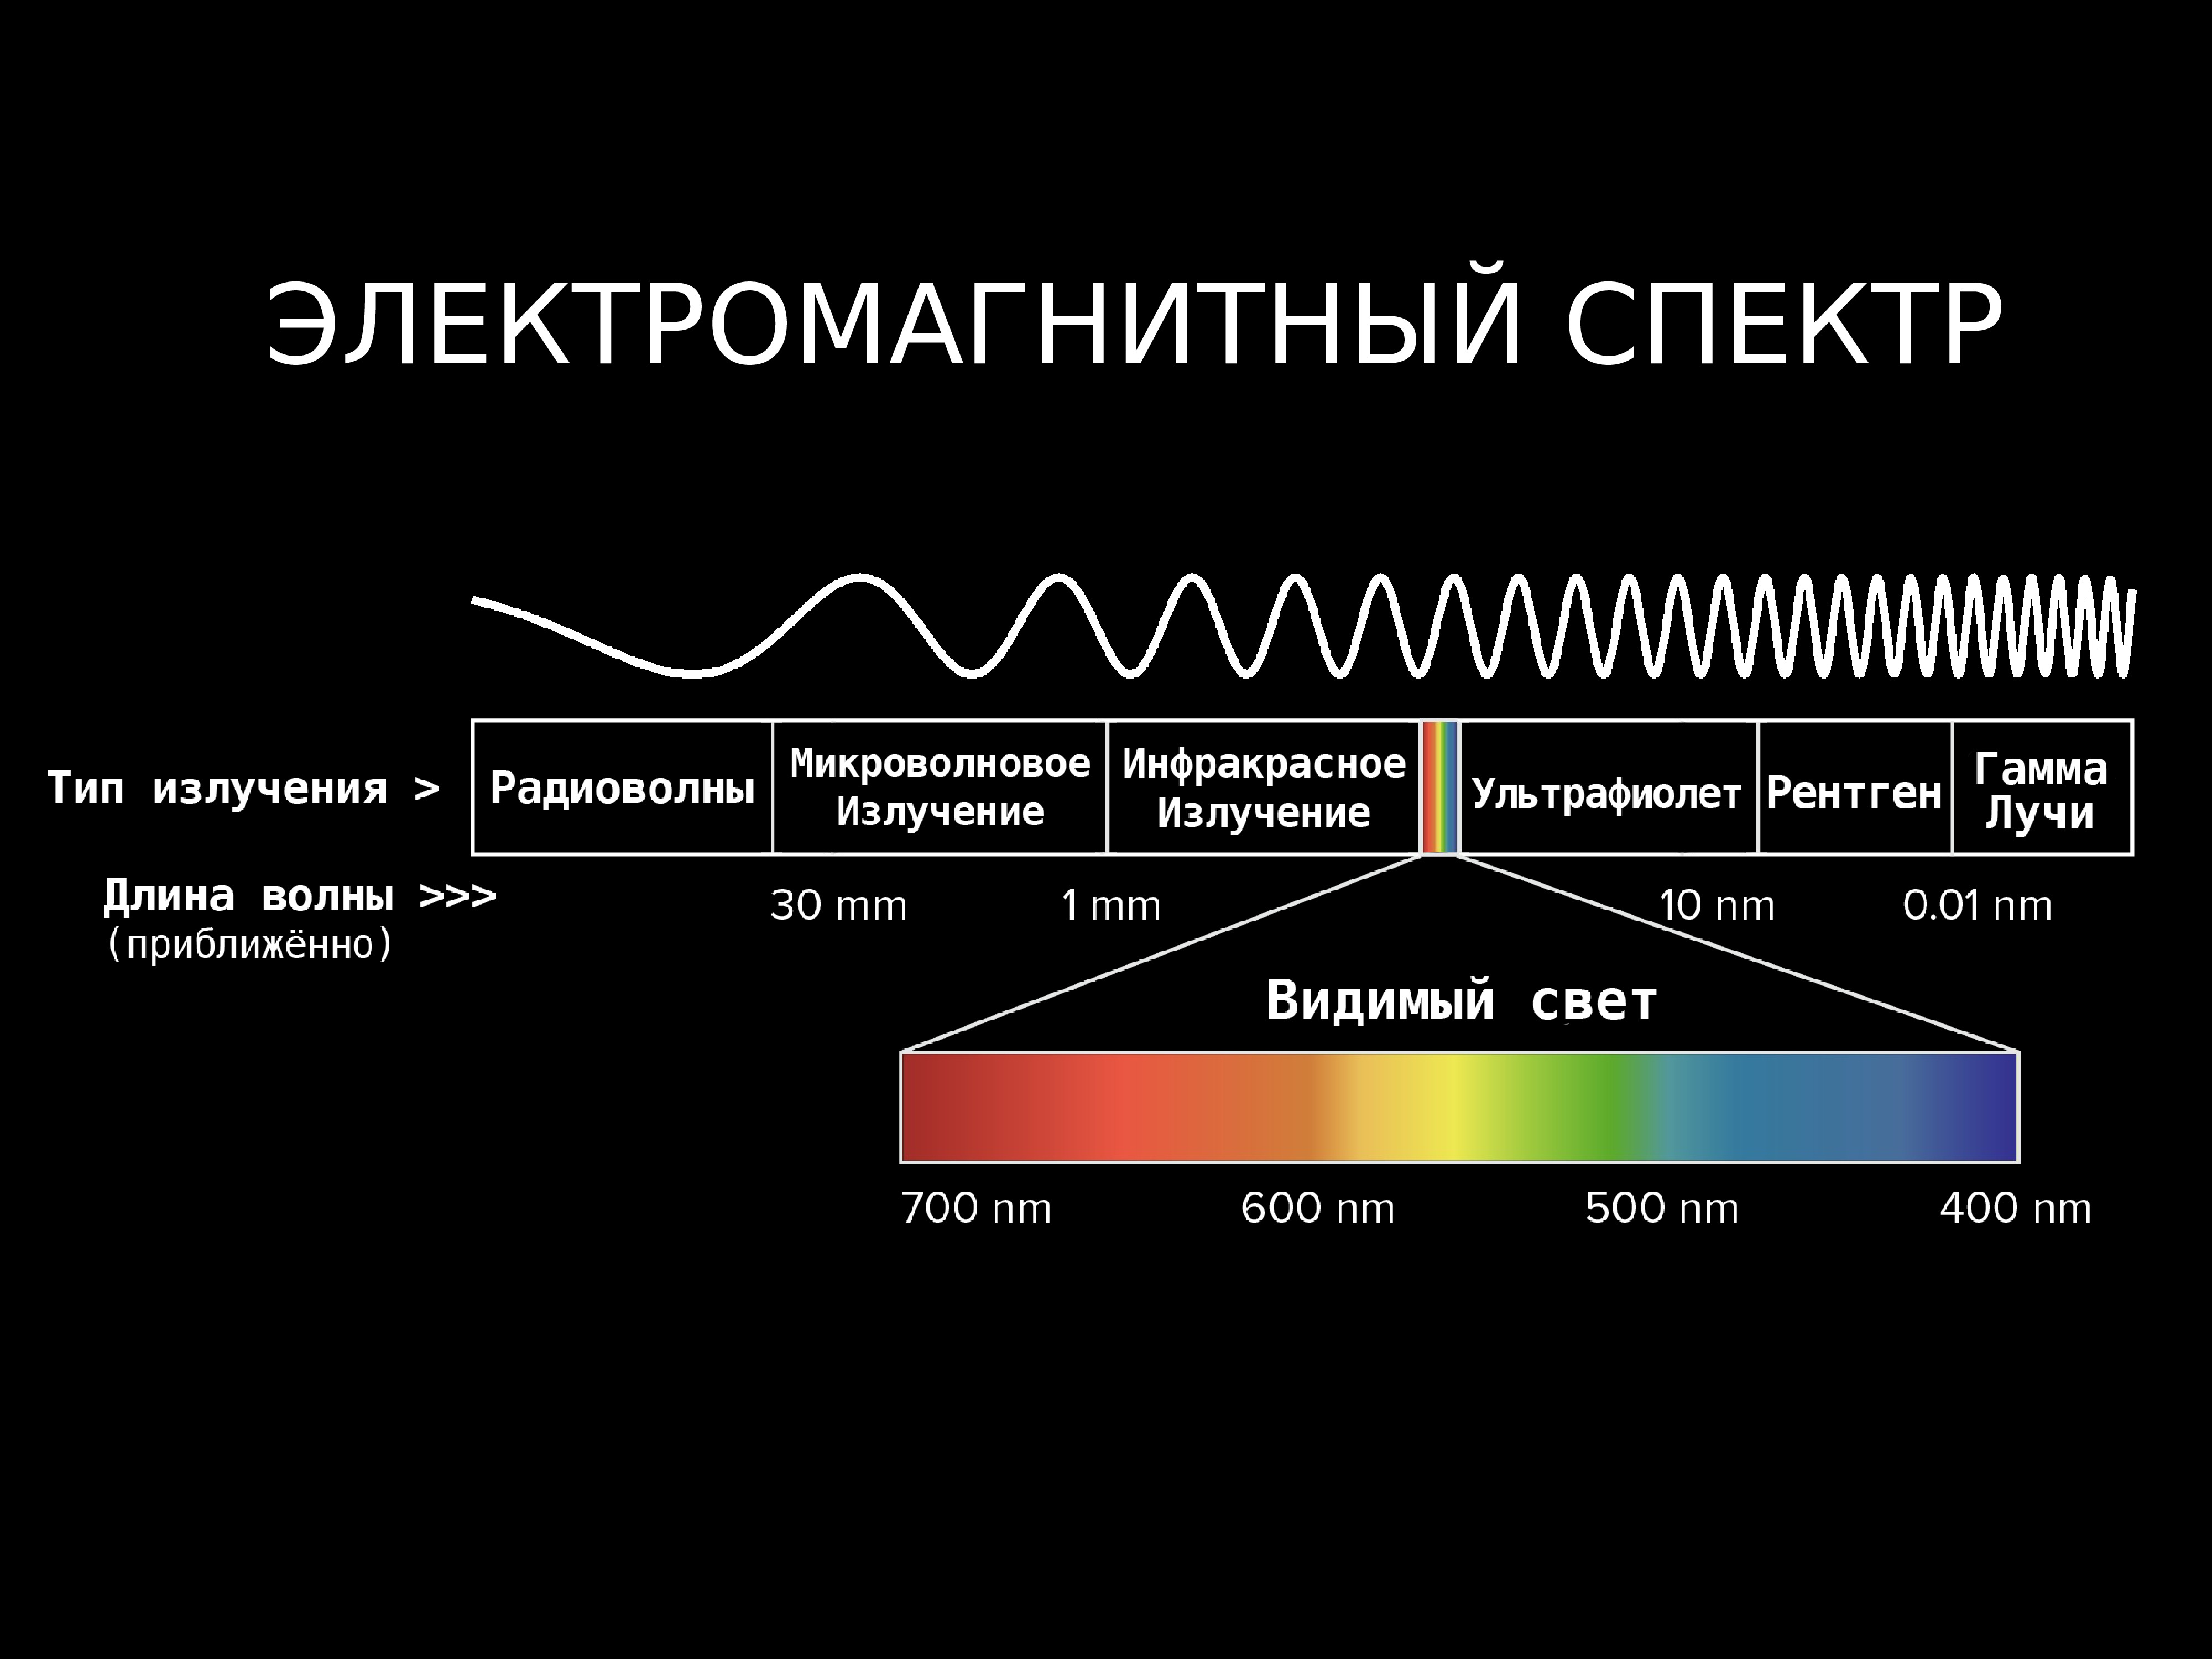 Какое излучение имеет низкую частоту. Диапазоны спектра электромагнитного излучения. Электромагнитное излучение спектр электромагнитного излучения. Спектр длин волн электромагнитных излучений. Диапазон излучения электромагнитных волн.